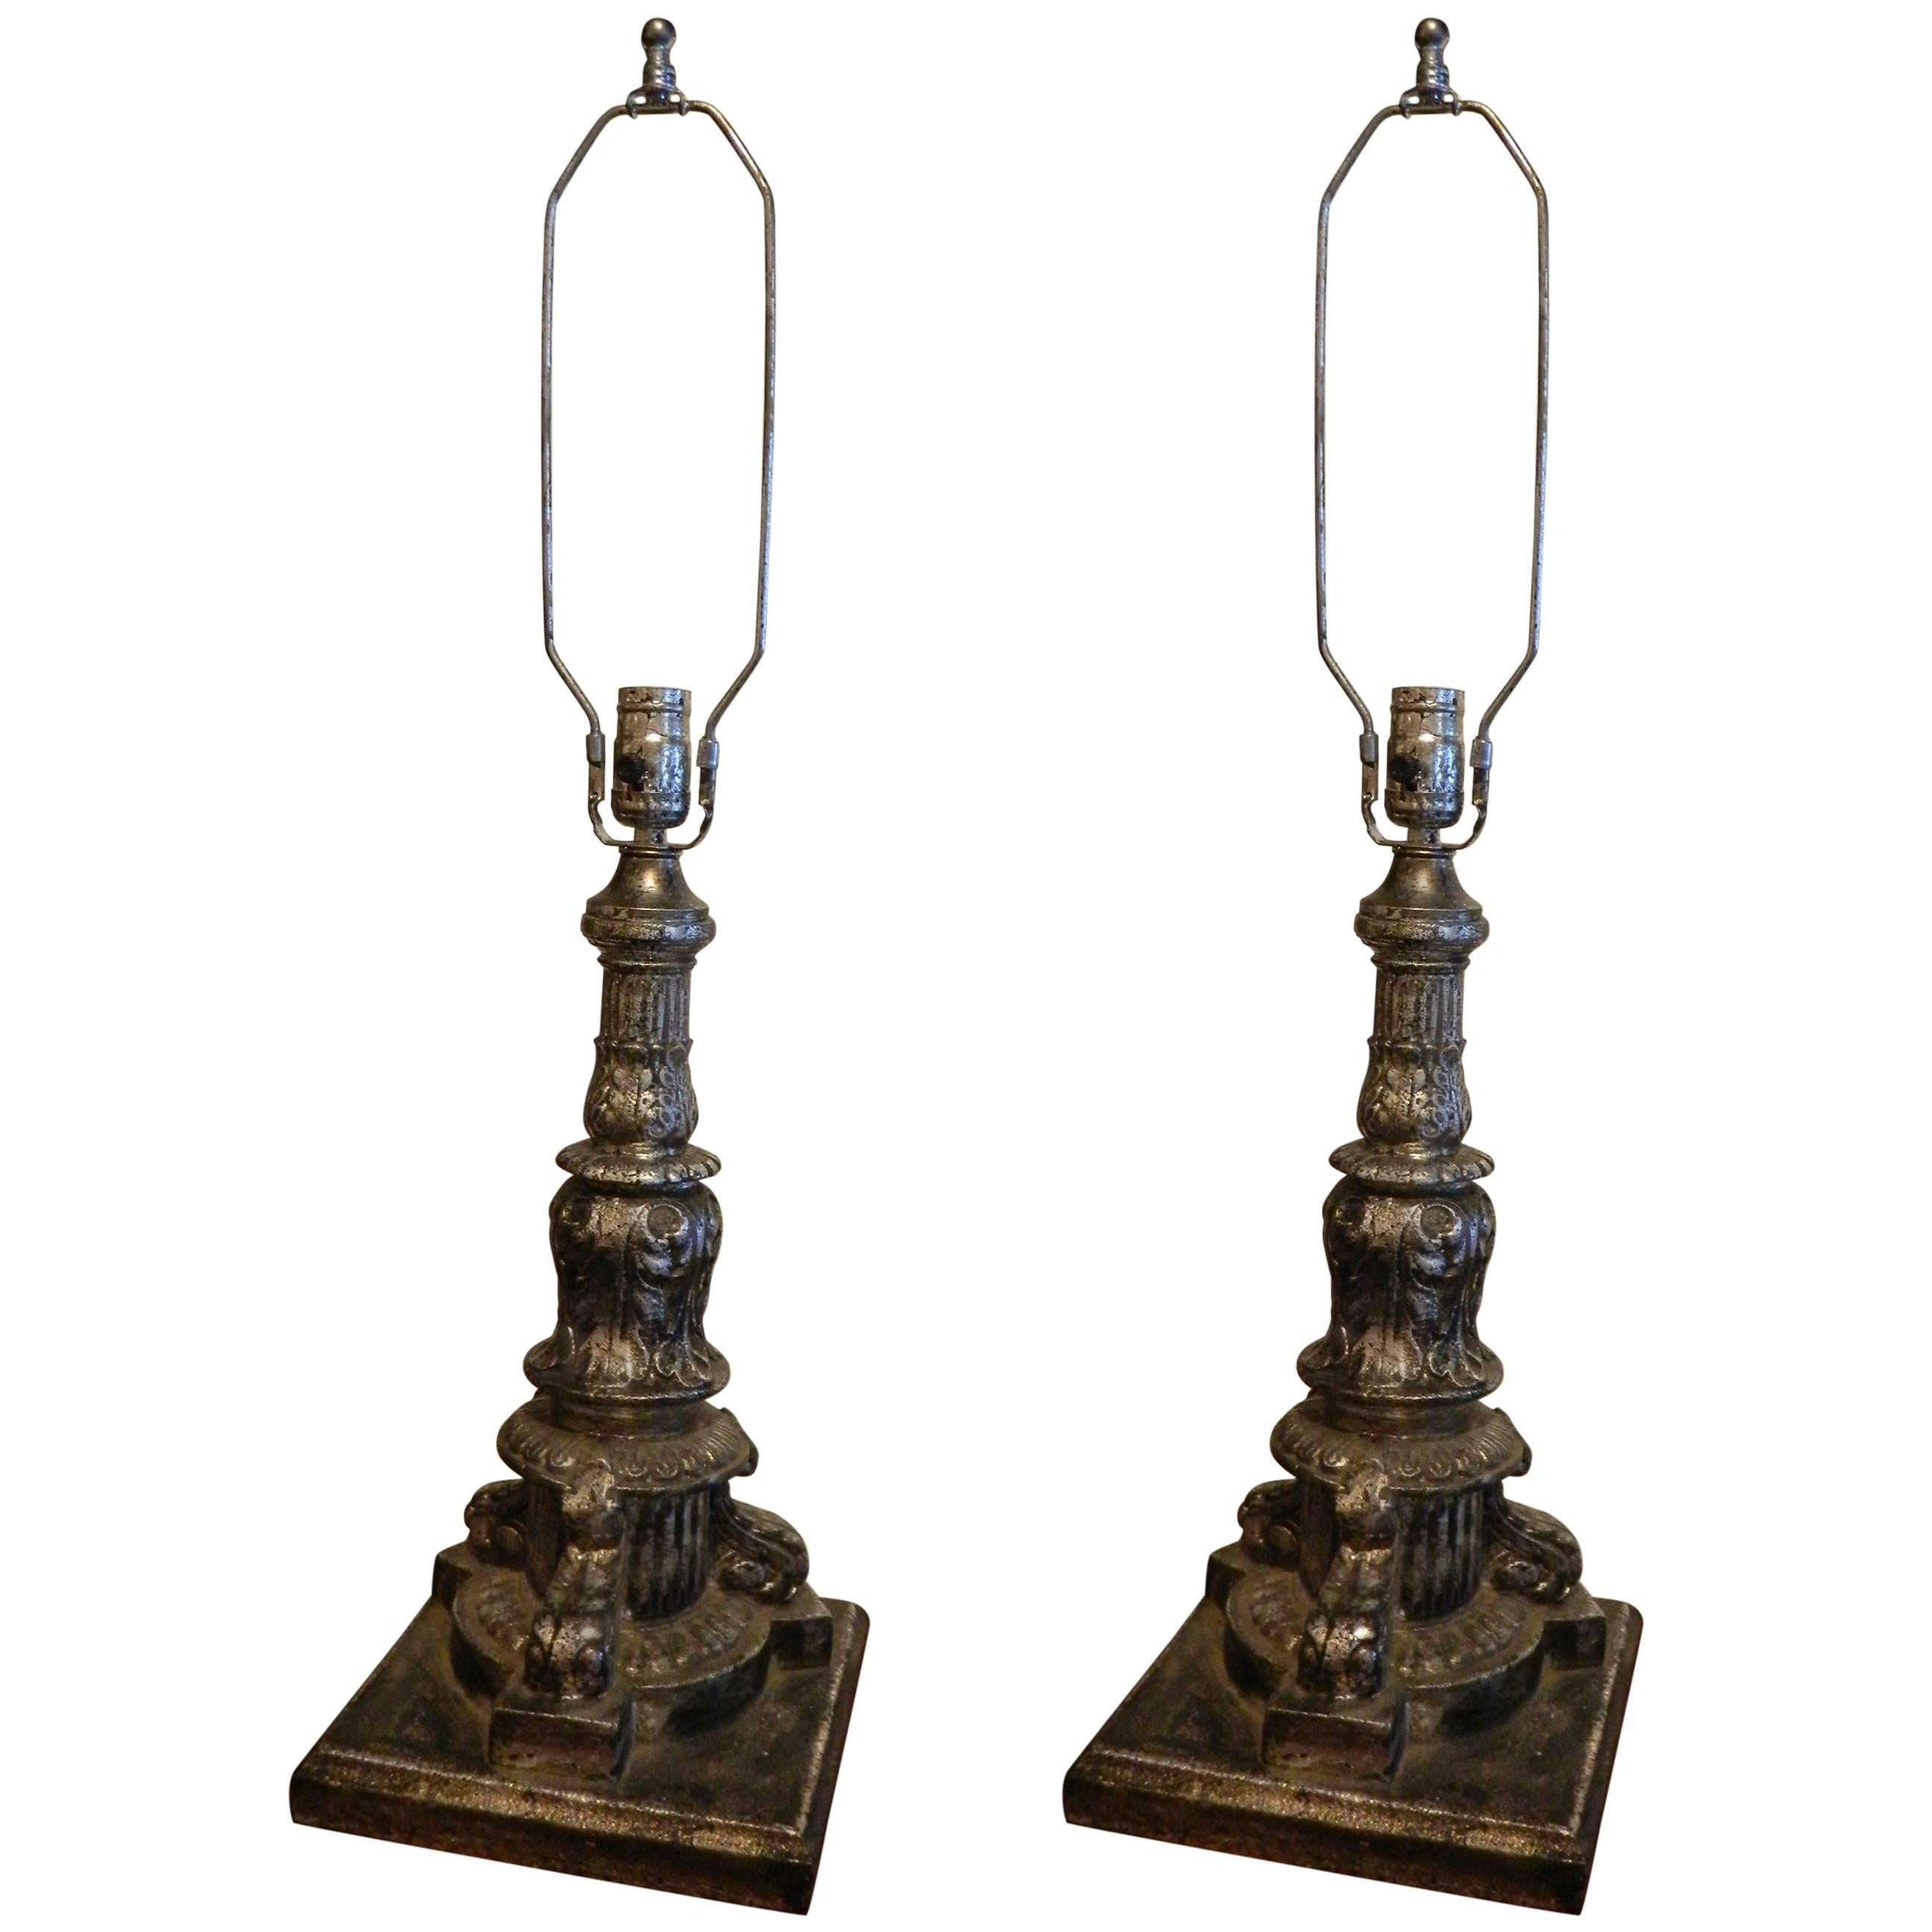 Paar architektonische Elemente aus Eisen und Blattsilber, umfunktioniert als Lampen, 19. Jahrhundert